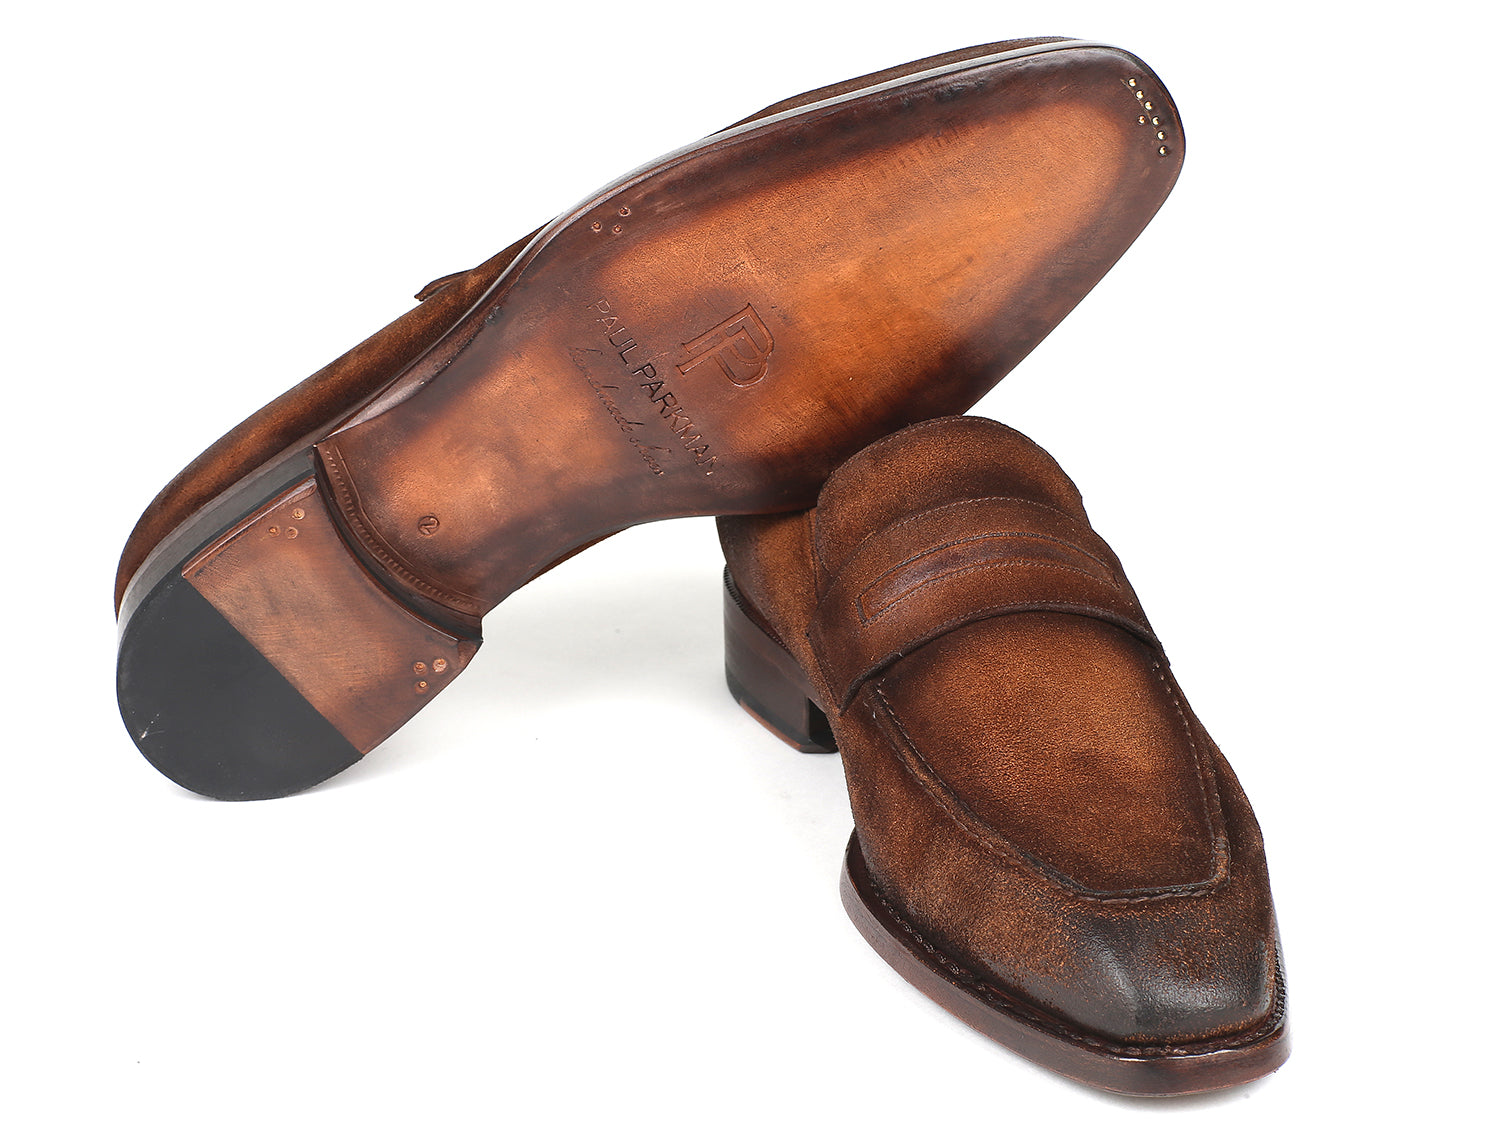 Paul Parkman Men's Tassel Loafer Brown Antique Suede Shoes (ID